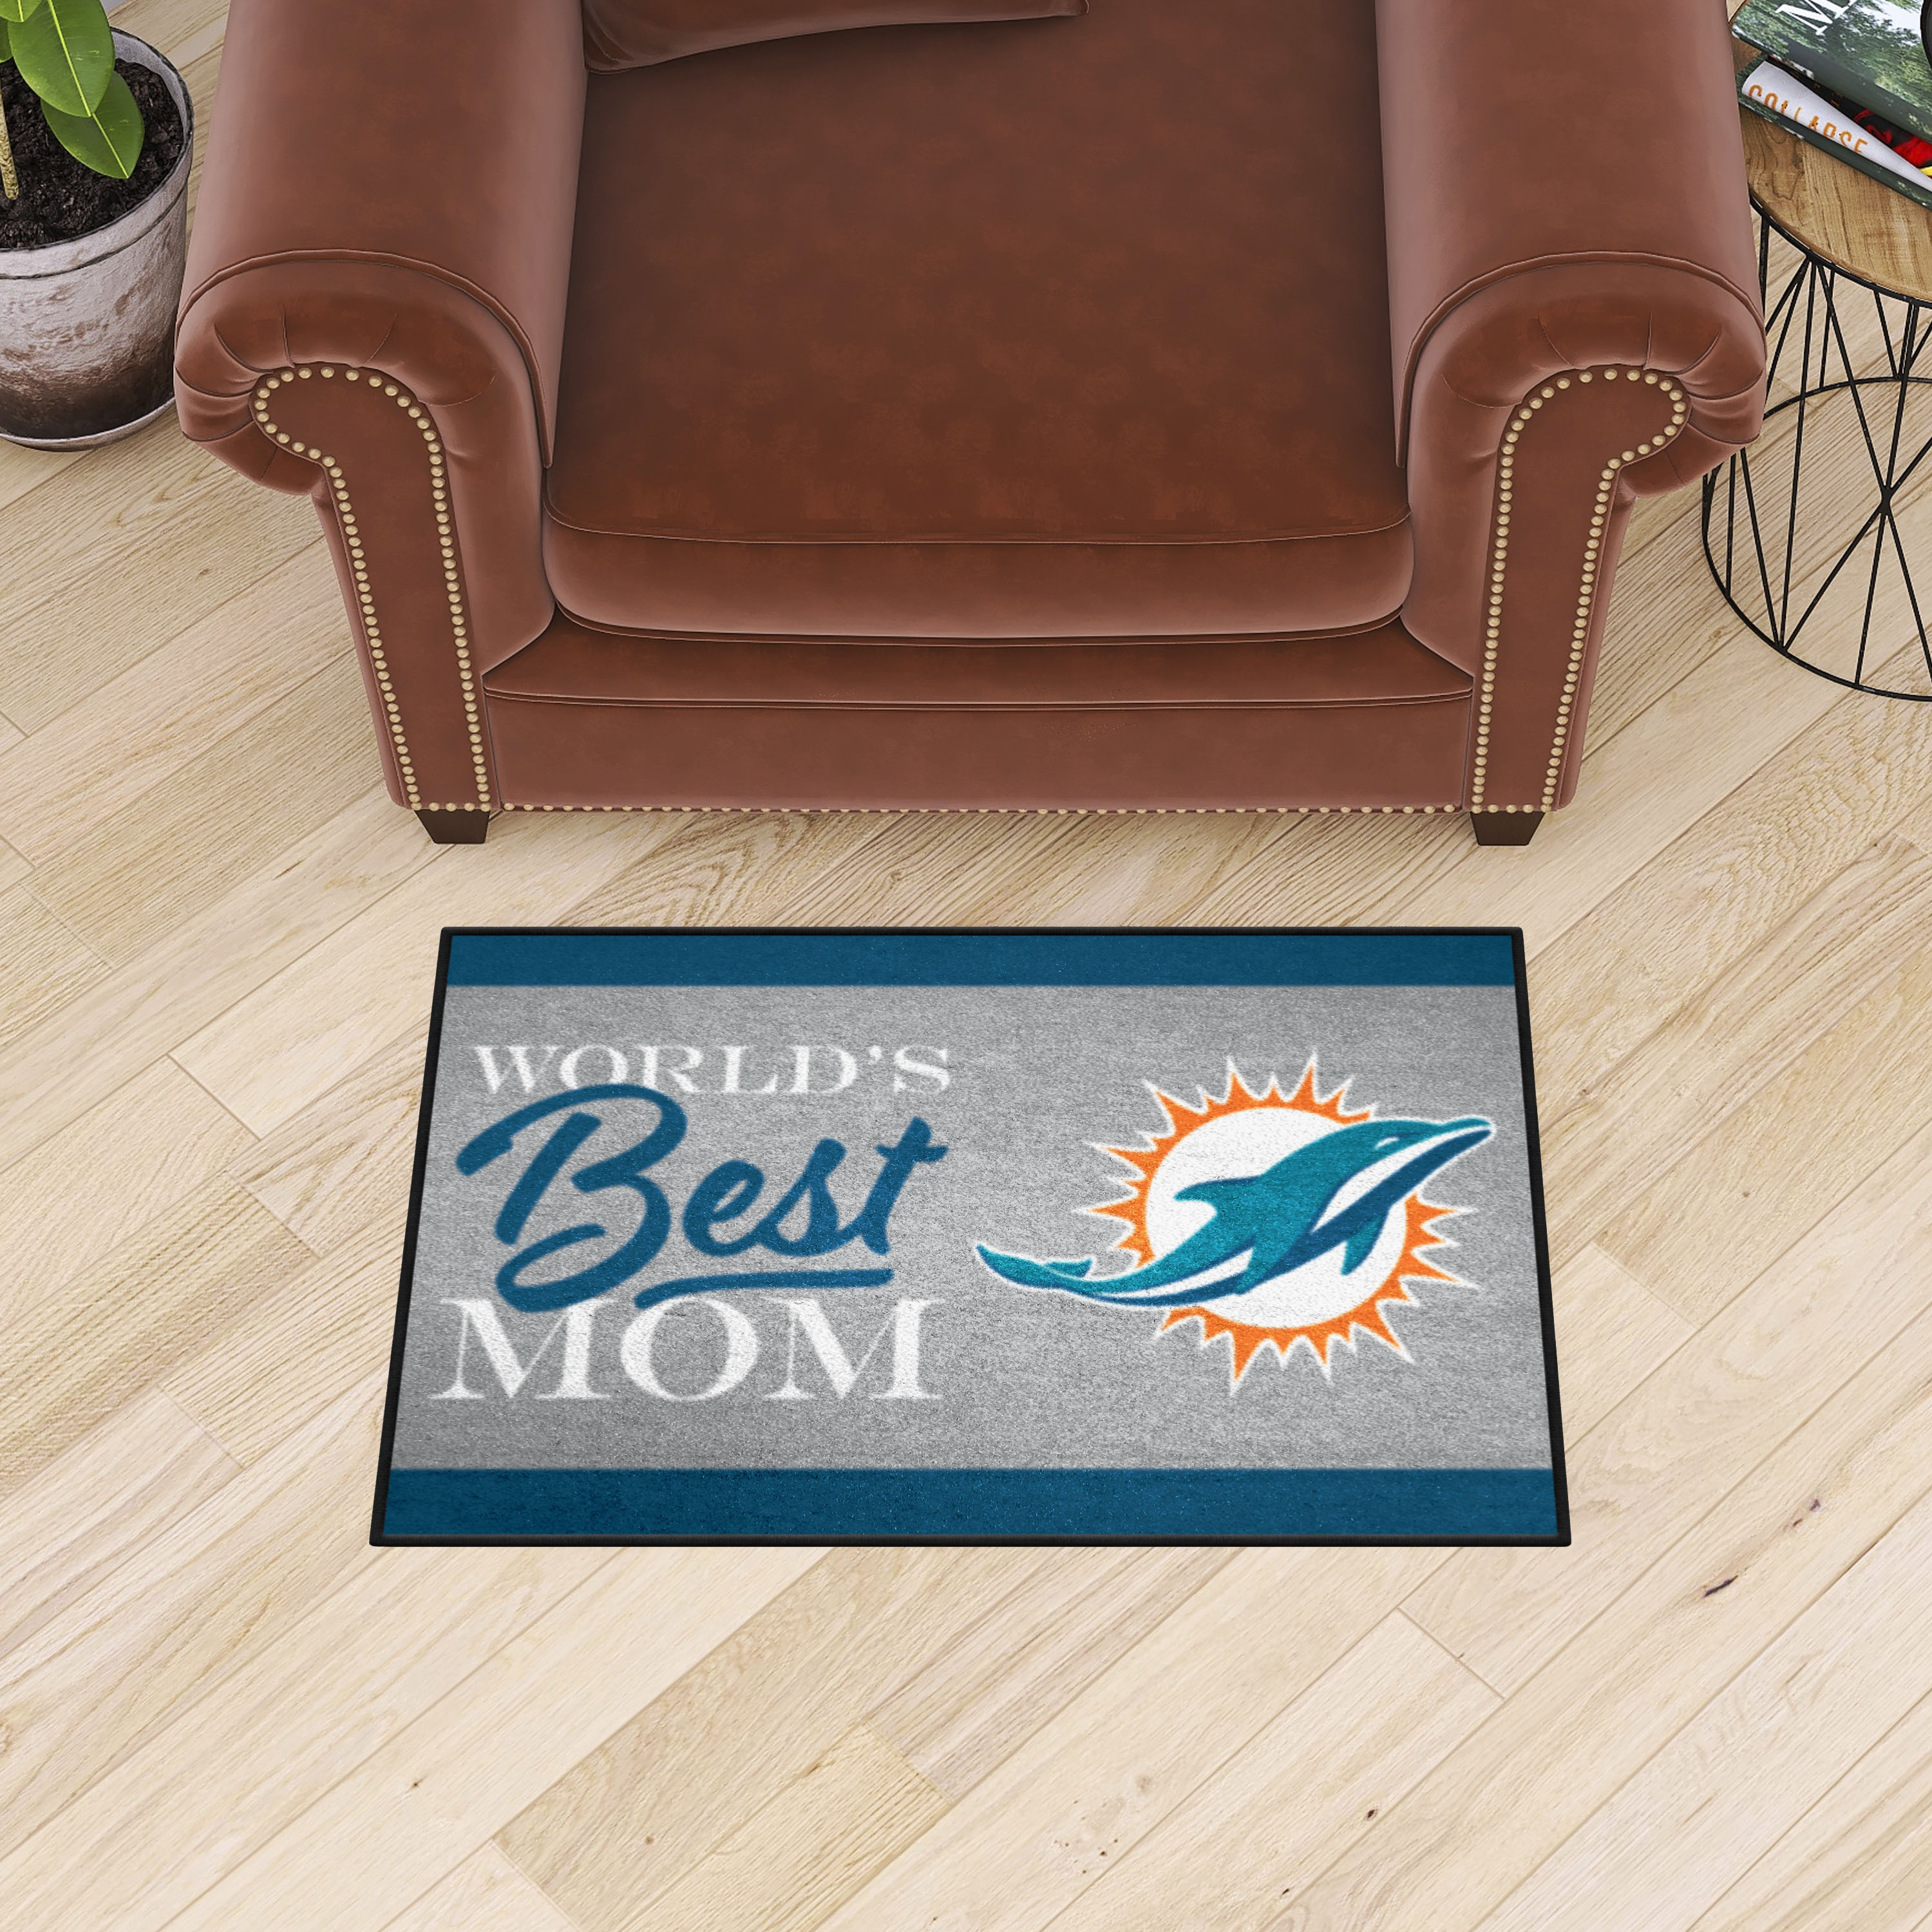 Miami Dolphins Worldâ€™s Best Mom Starter Doormat - 19 x 30